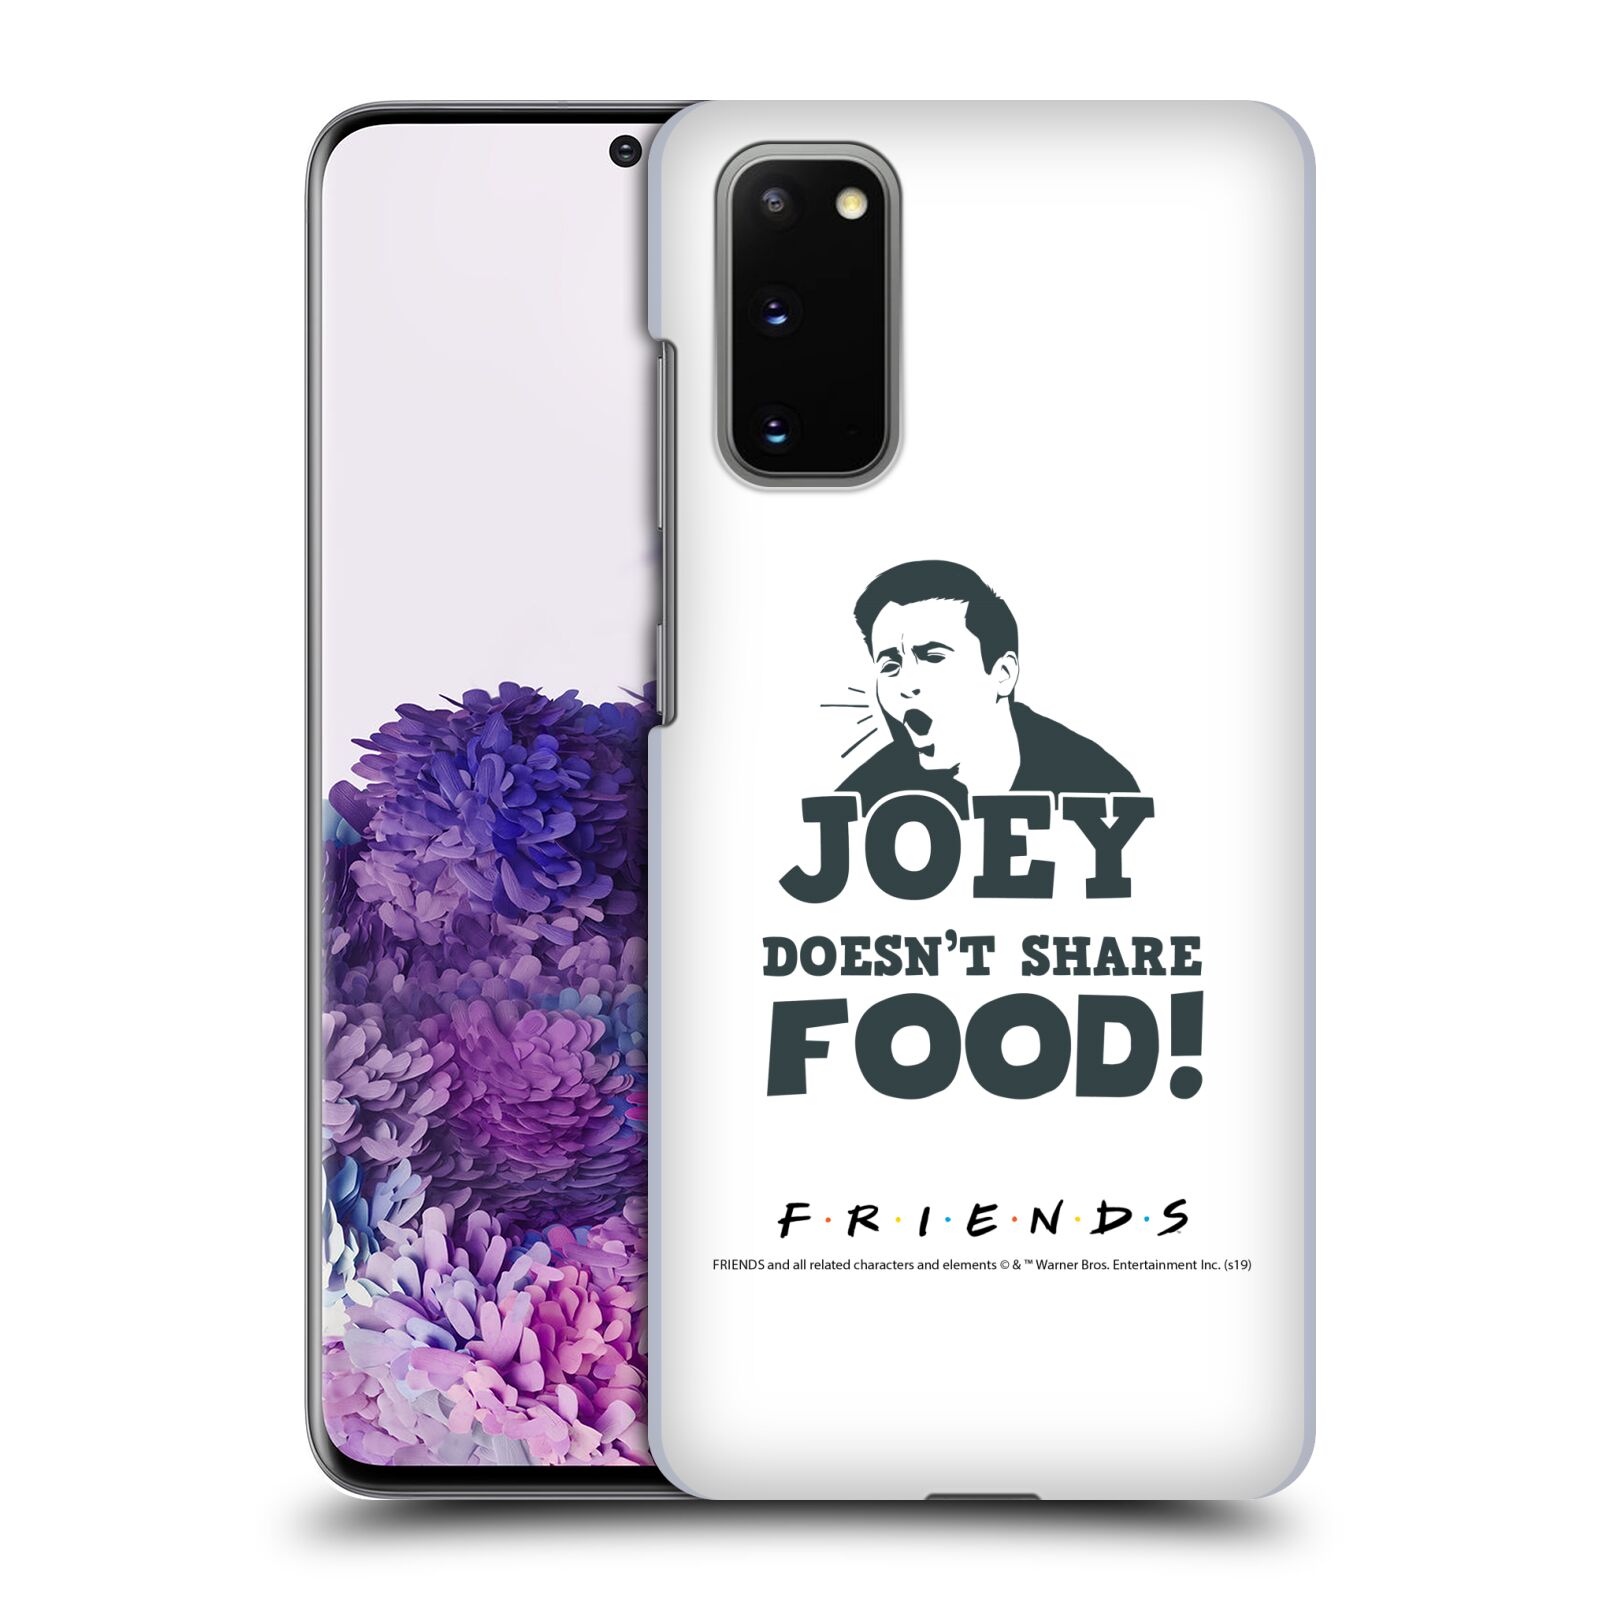 Pouzdro na mobil Samsung Galaxy S20 - HEAD CASE - Seriál Přátelé - Joey se o jídlo nedělí
